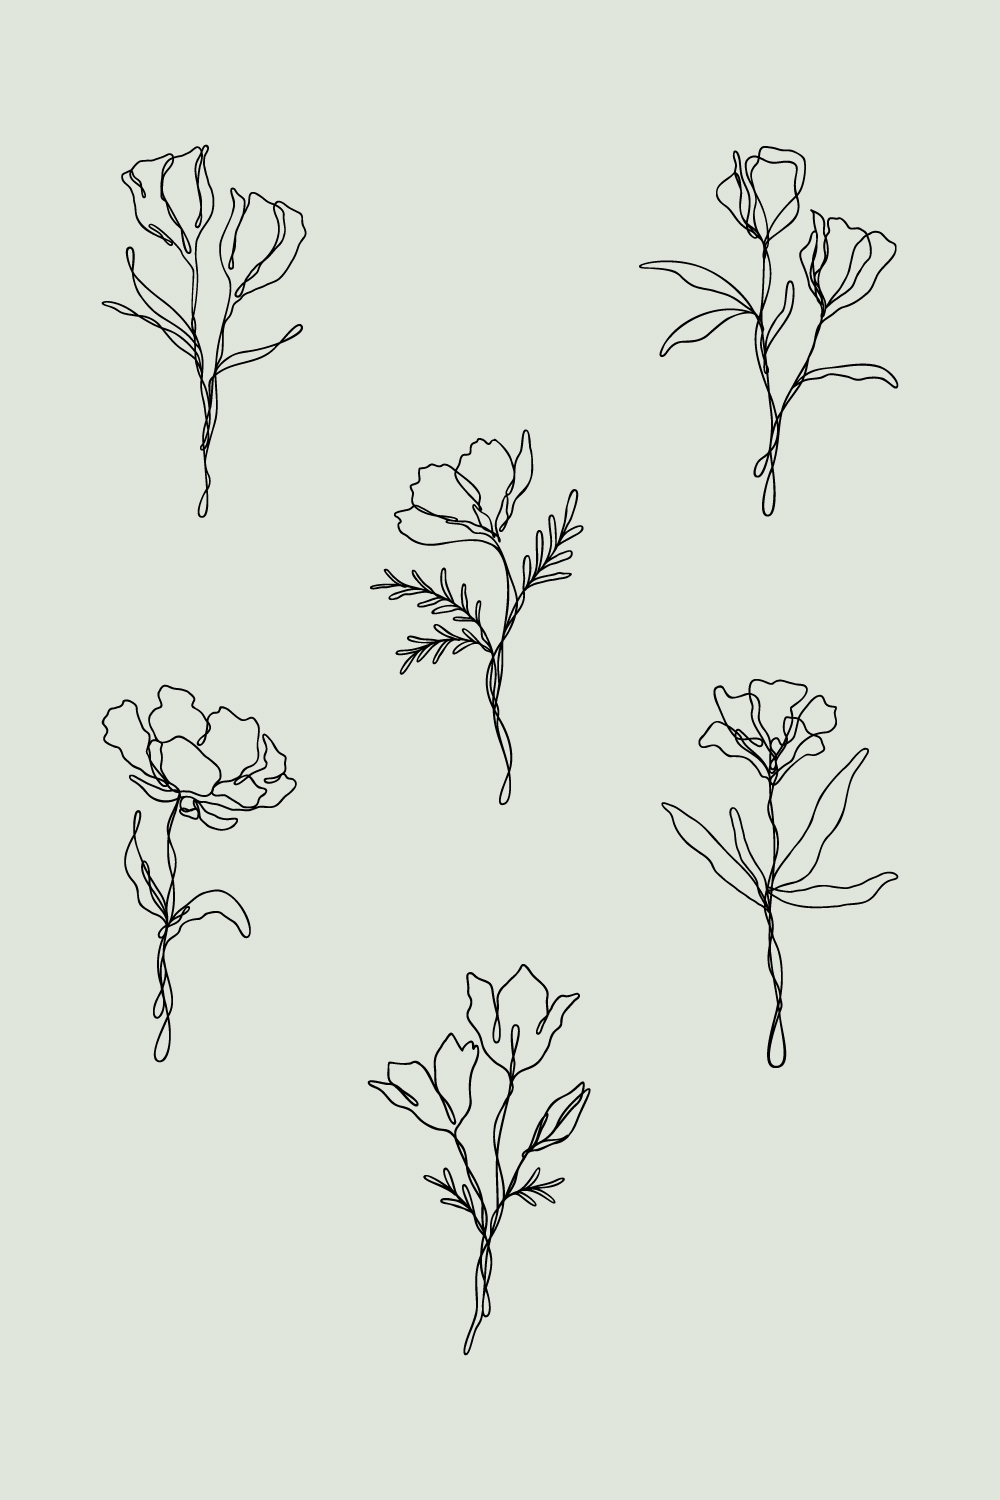 6 Floral Line Art Bundle | Continuous Line Wildflower Design Set pinterest preview image.